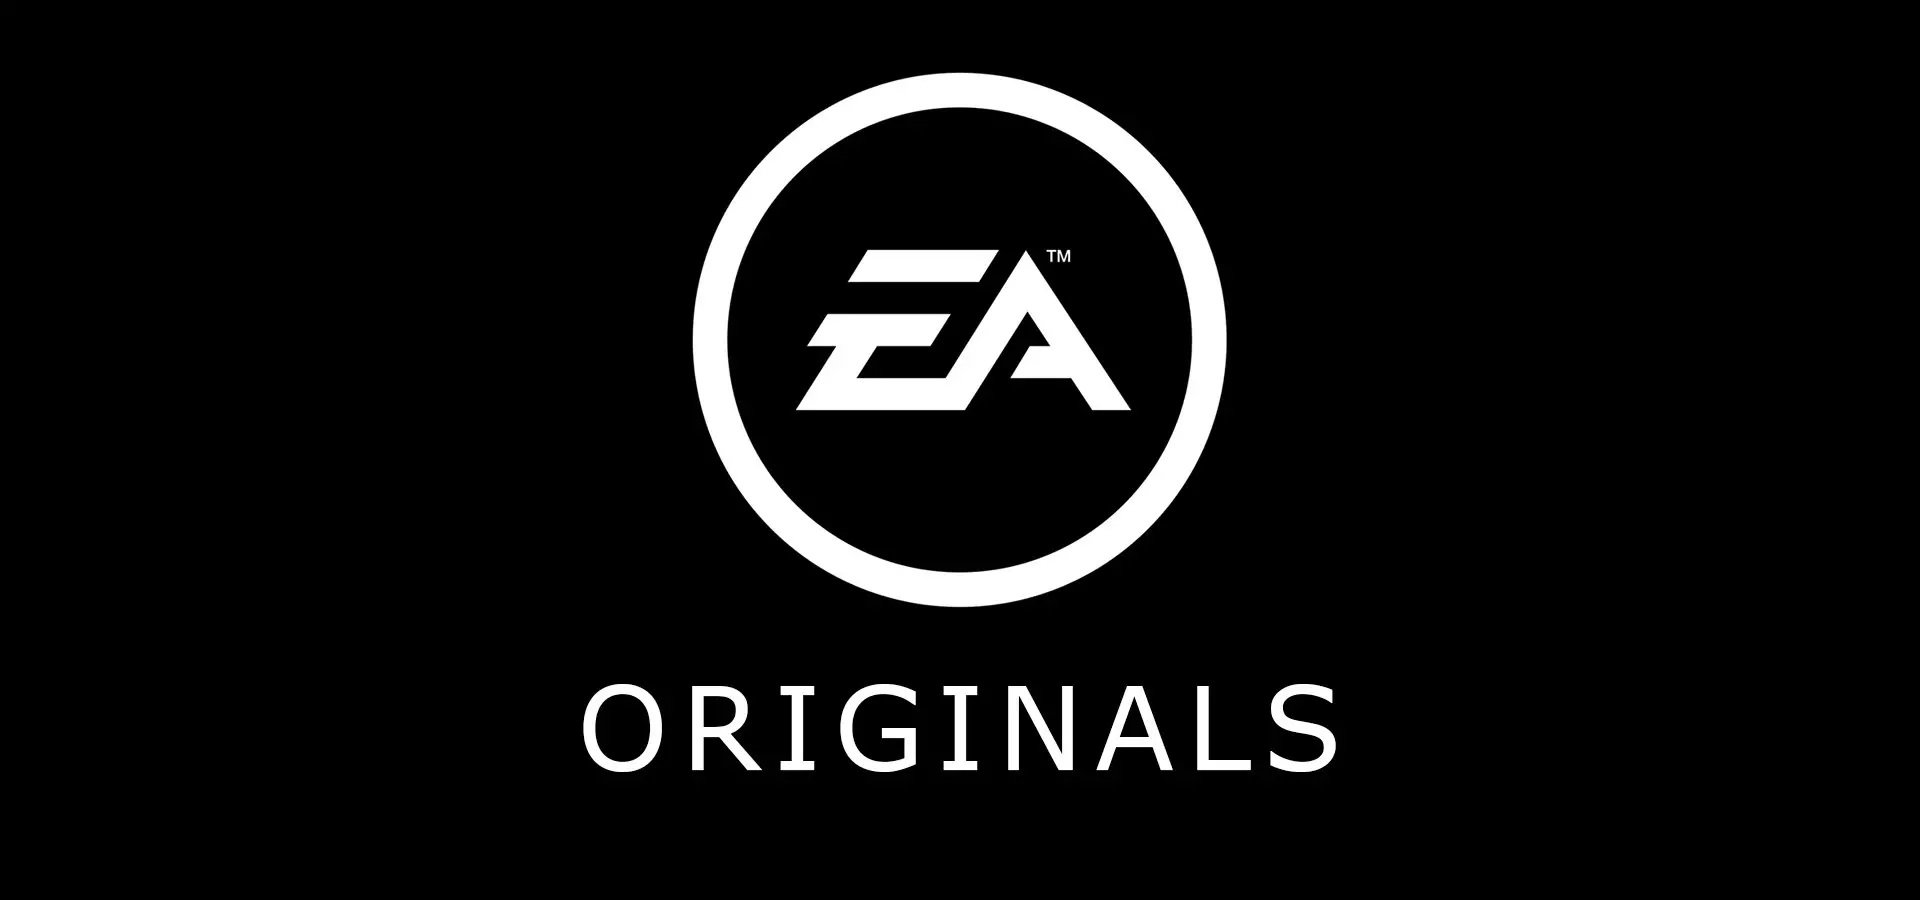 EA Originals: annunciati tre nuovi titoli